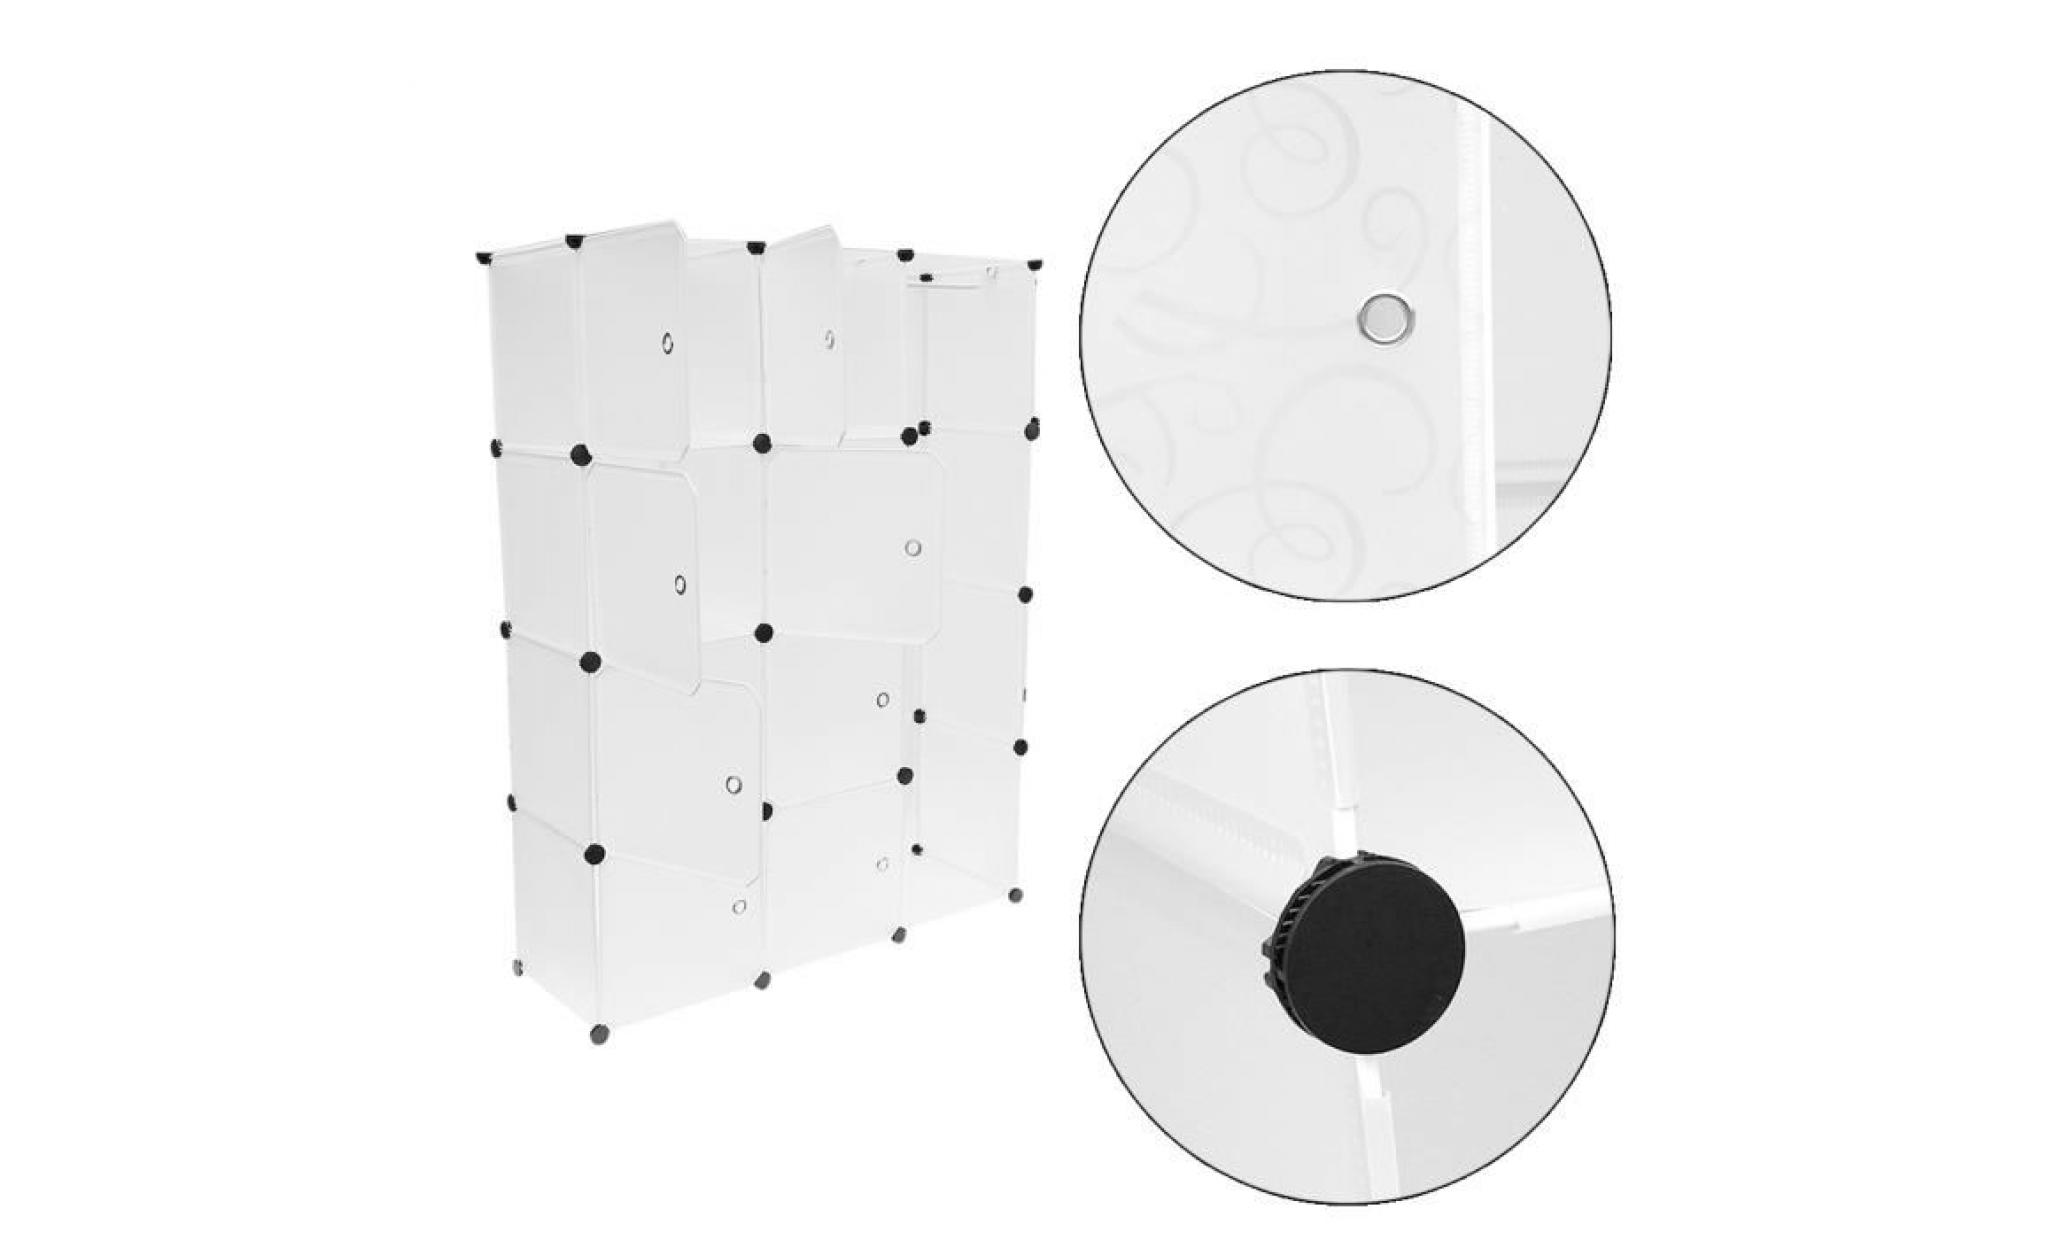 blanc 12 cube armoire de vetement en plastique piece meuble combinaison pas cher